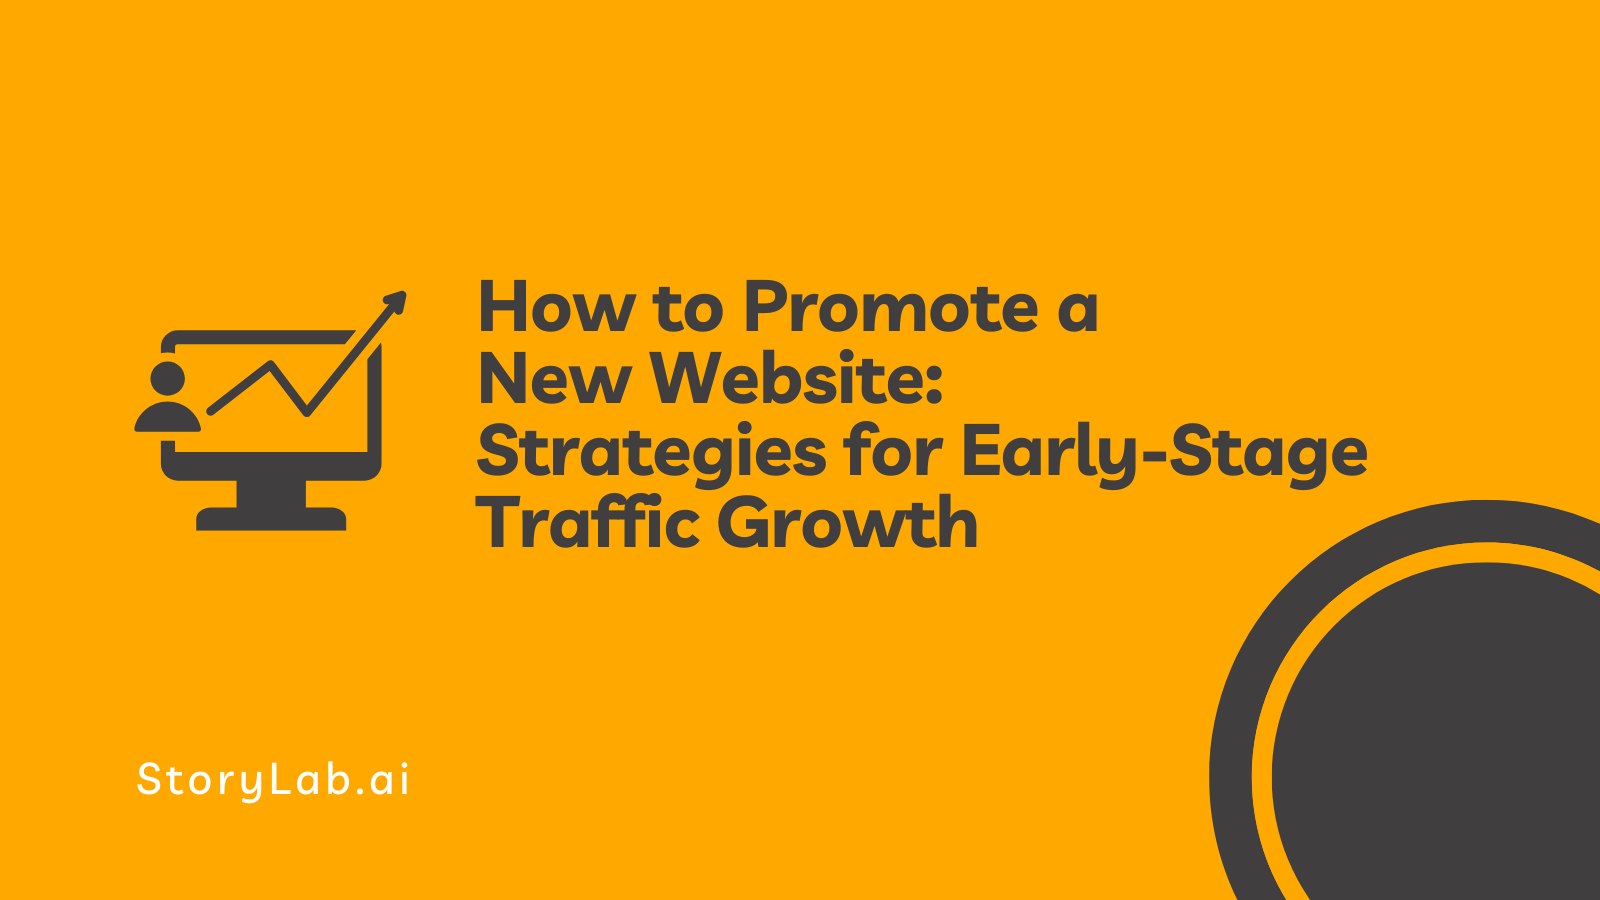 Hoe u een nieuwe websitestrategie kunt promoten voor verkeersgroei in een vroeg stadium